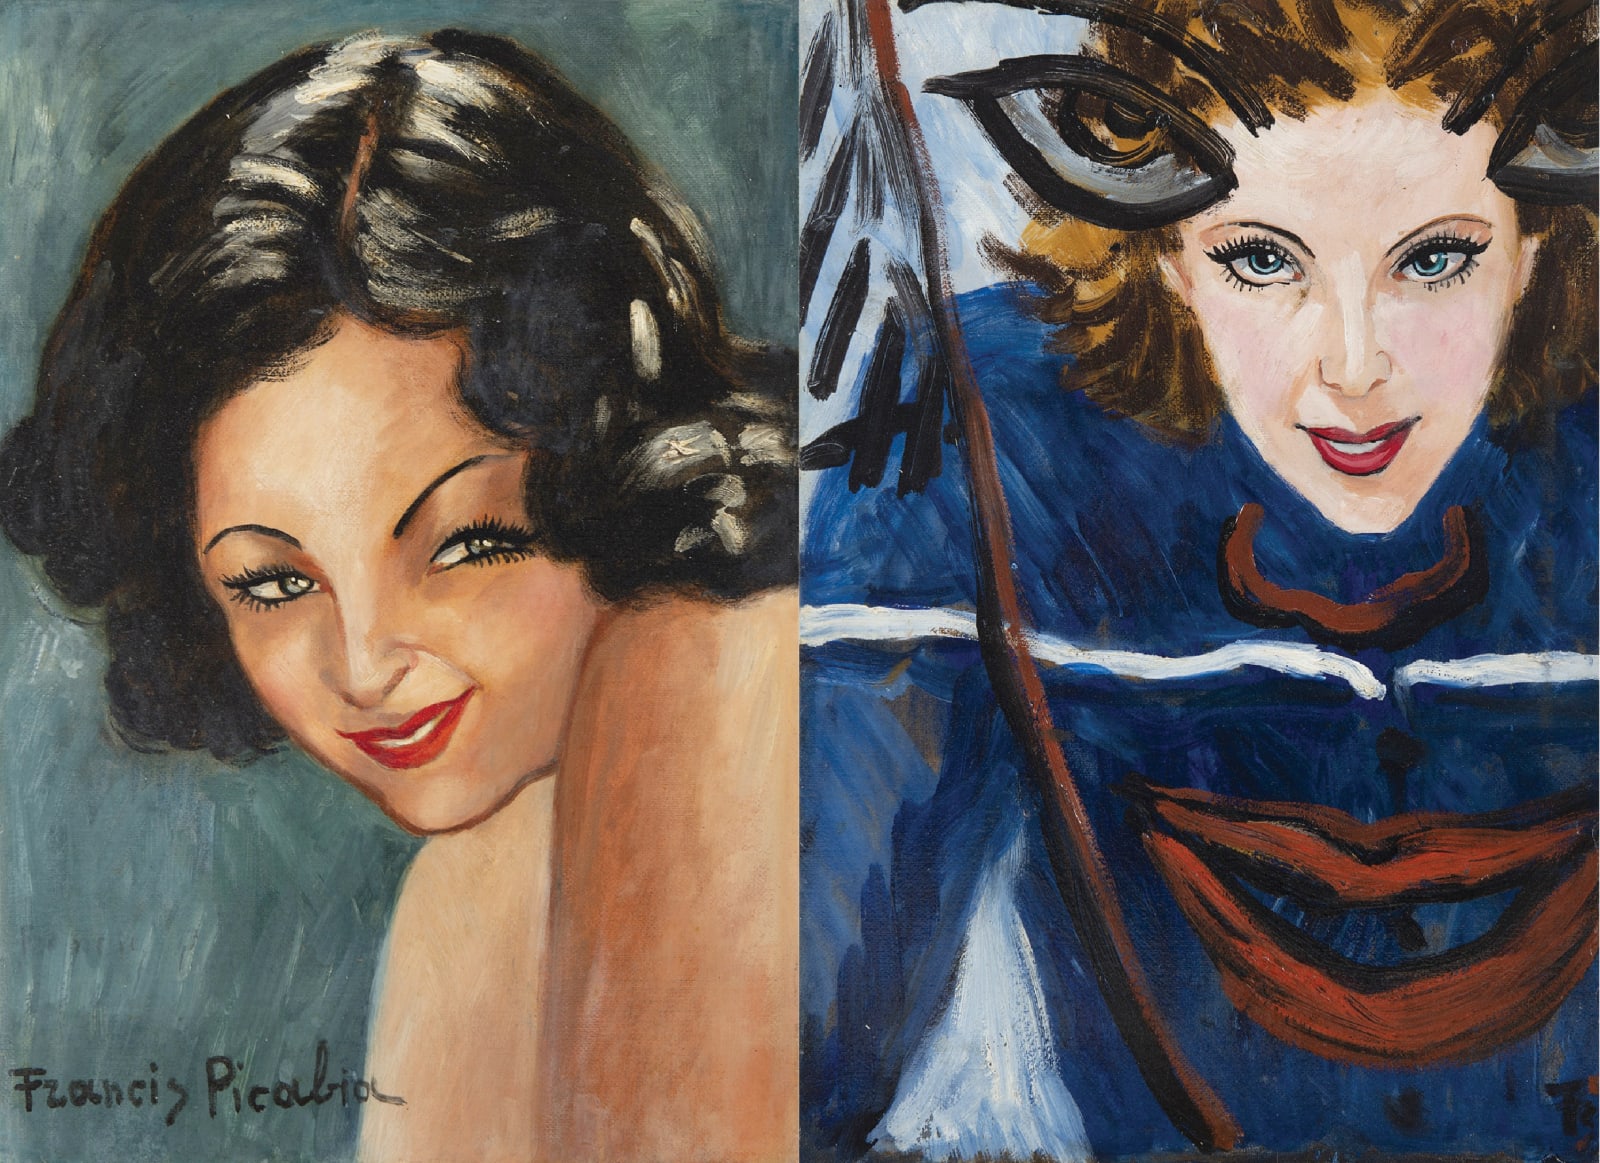 FRANCIS PICABIA, Double portrait de femme, circa 1942-1943